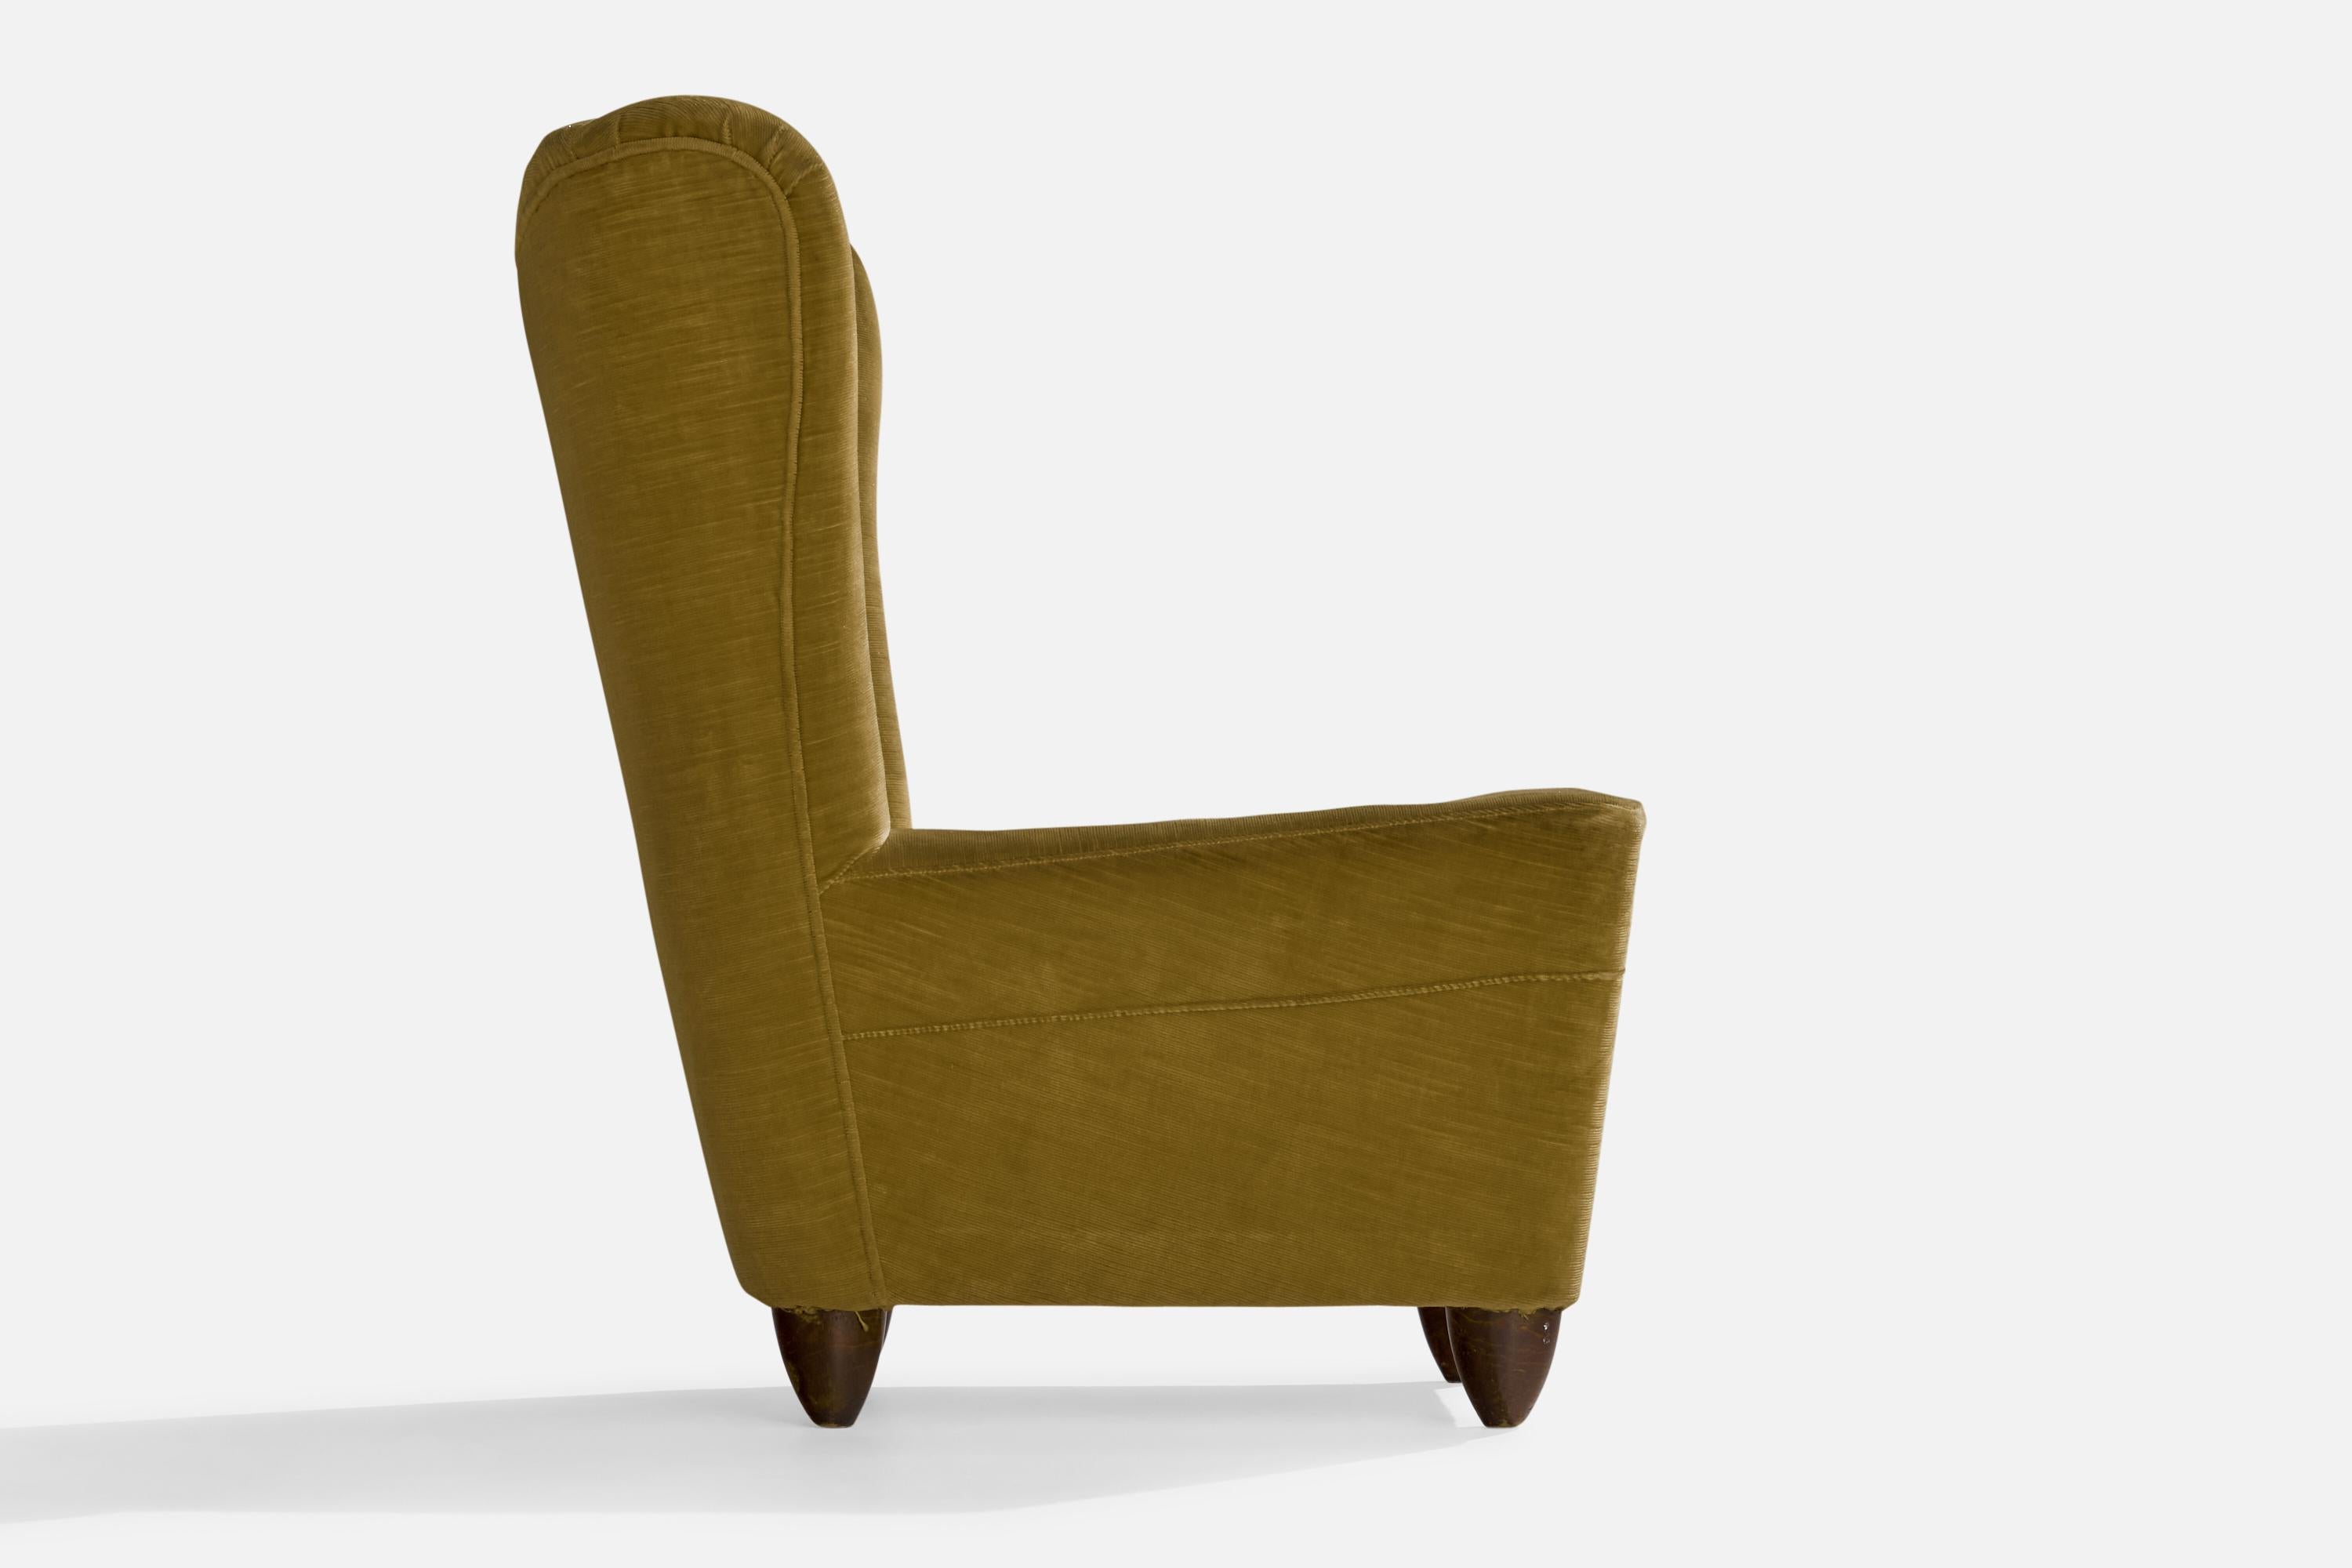 Italian Designer, Slipper Chairs, Velvet, Wood, Italy, 1940s For Sale 2